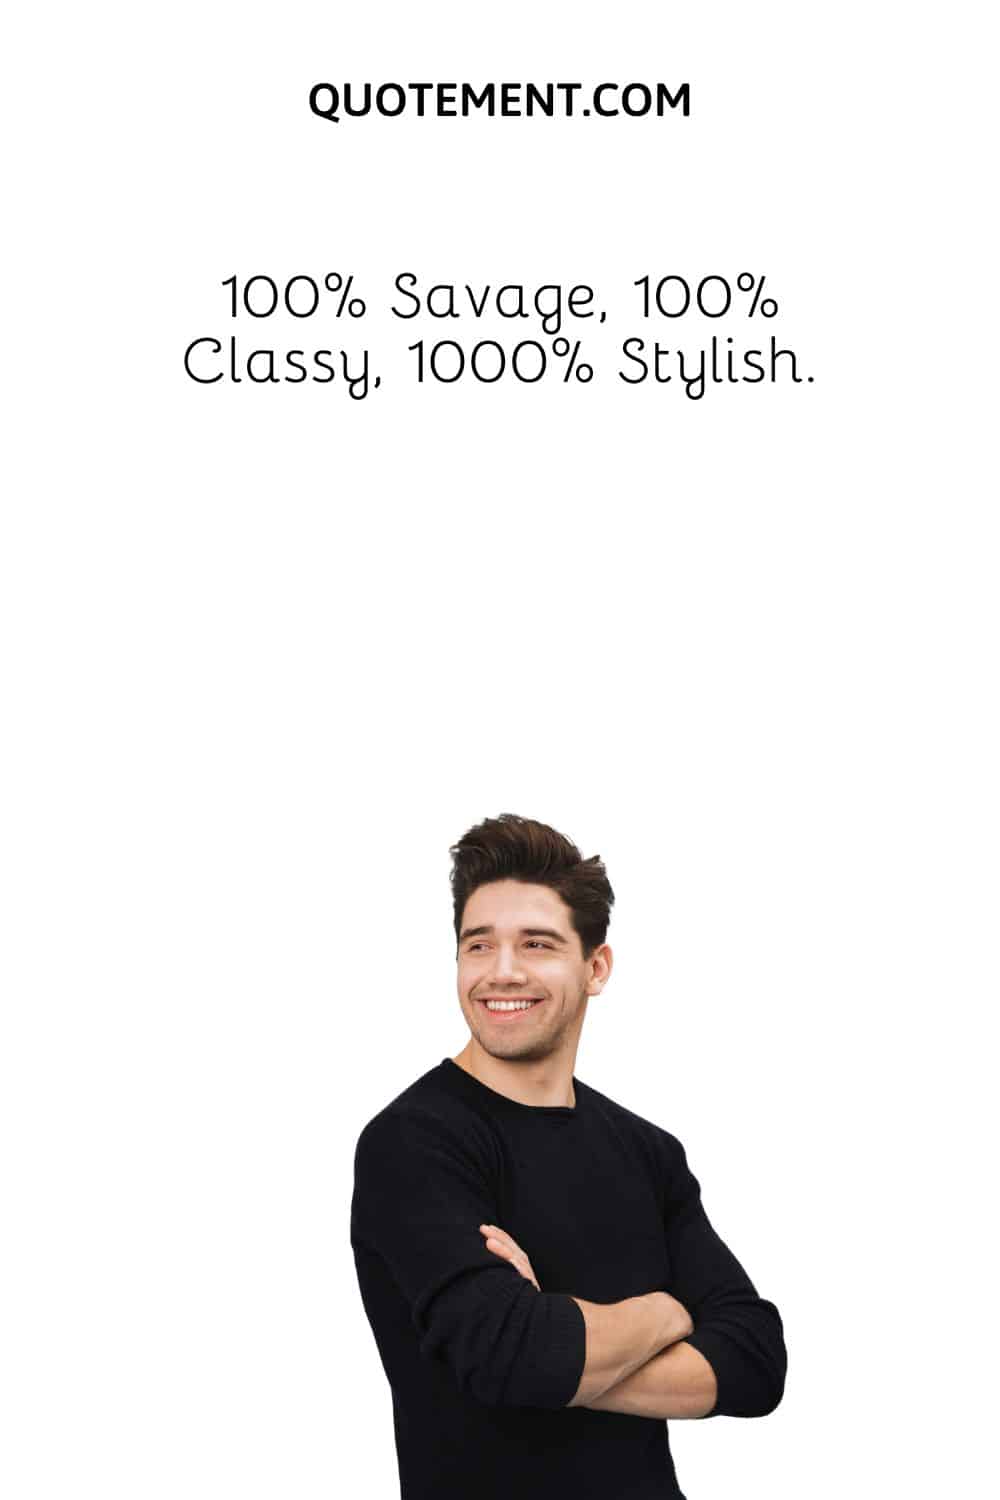 100% Savage, 100% Classy, 1000% Stylish